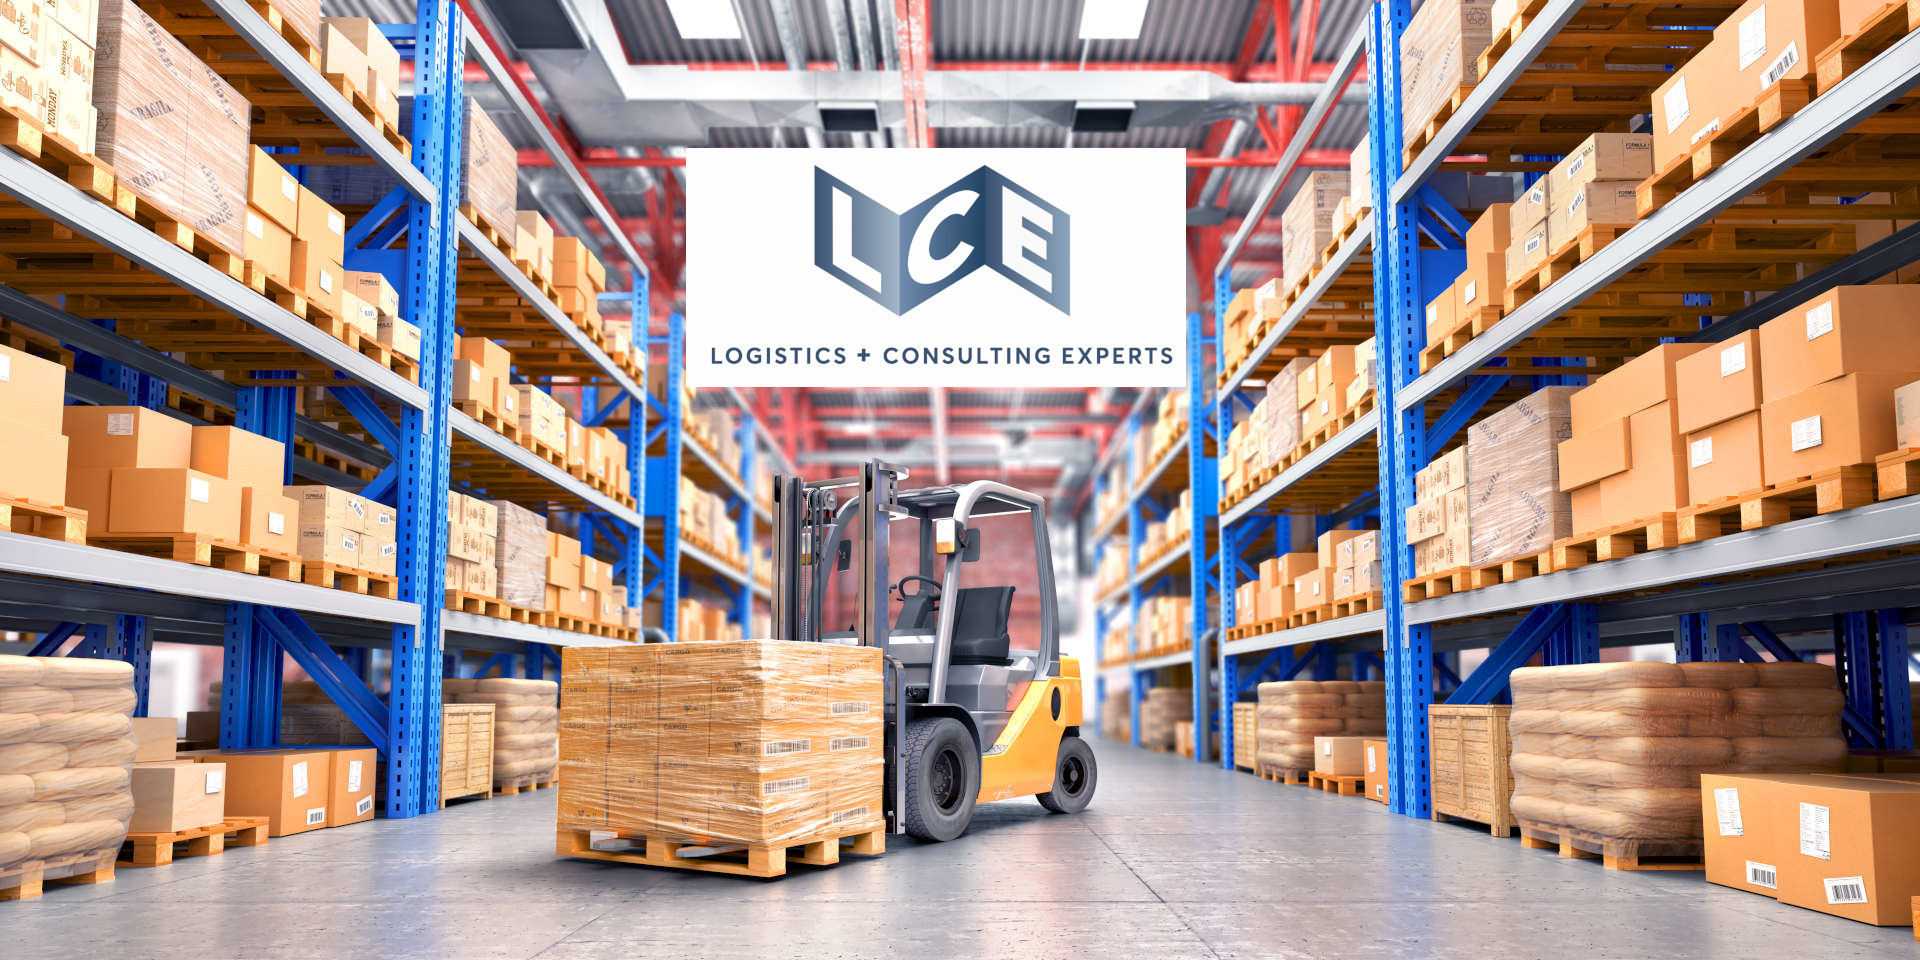 LCE Logistics